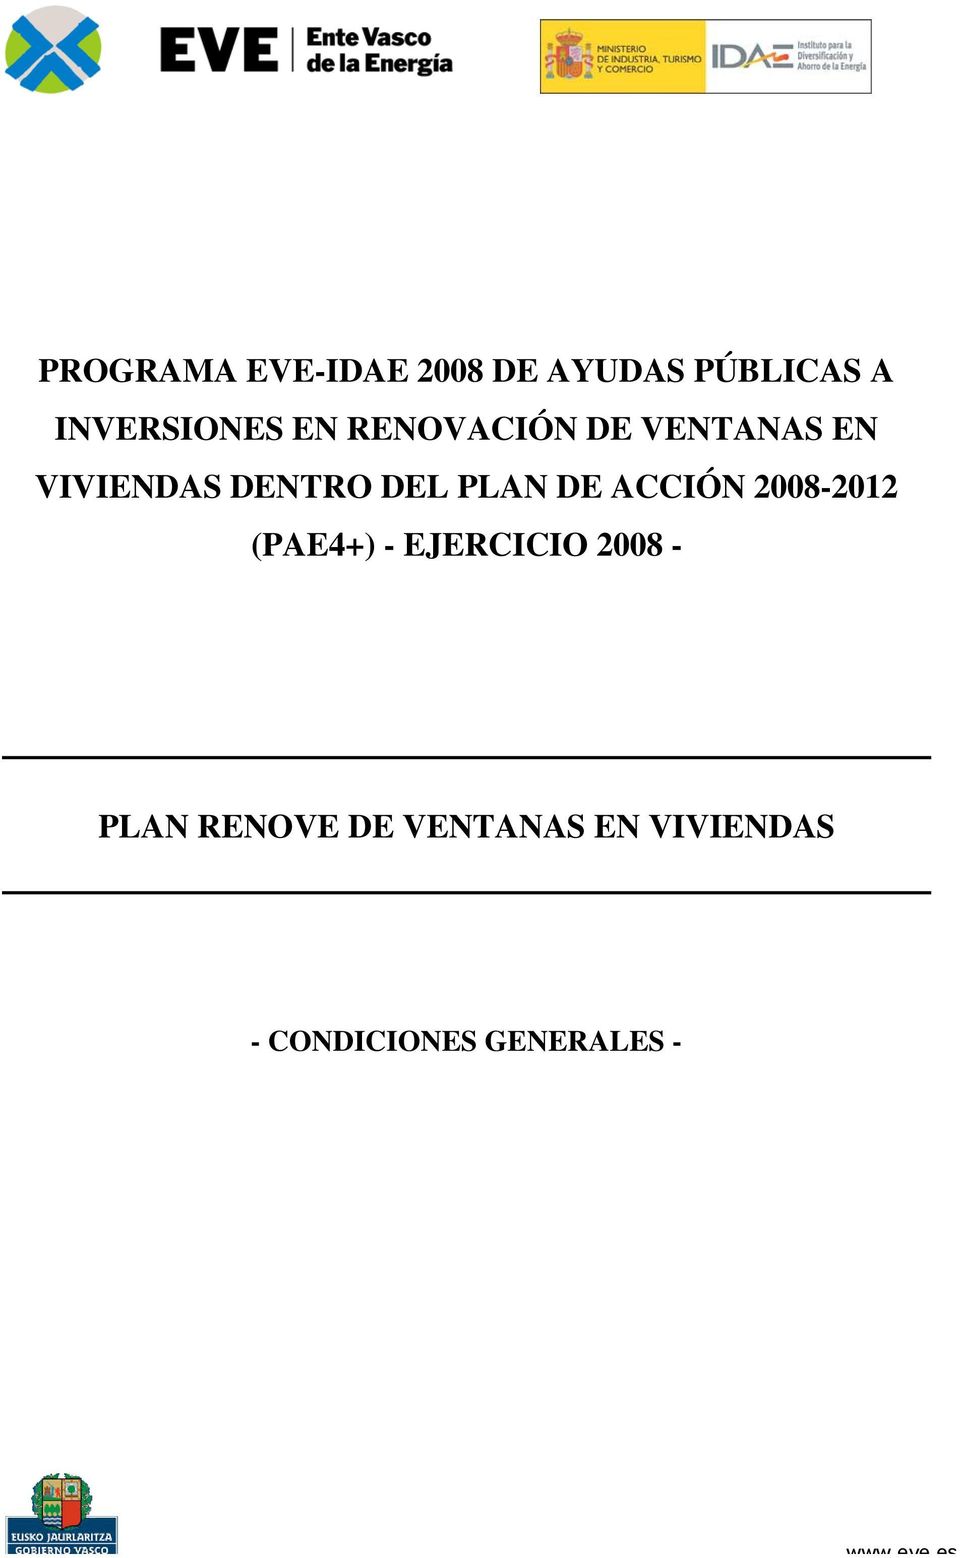 ACCIÓN 2008-2012 (PAE4+) - EJERCICIO 2008 - PLAN RENOVE